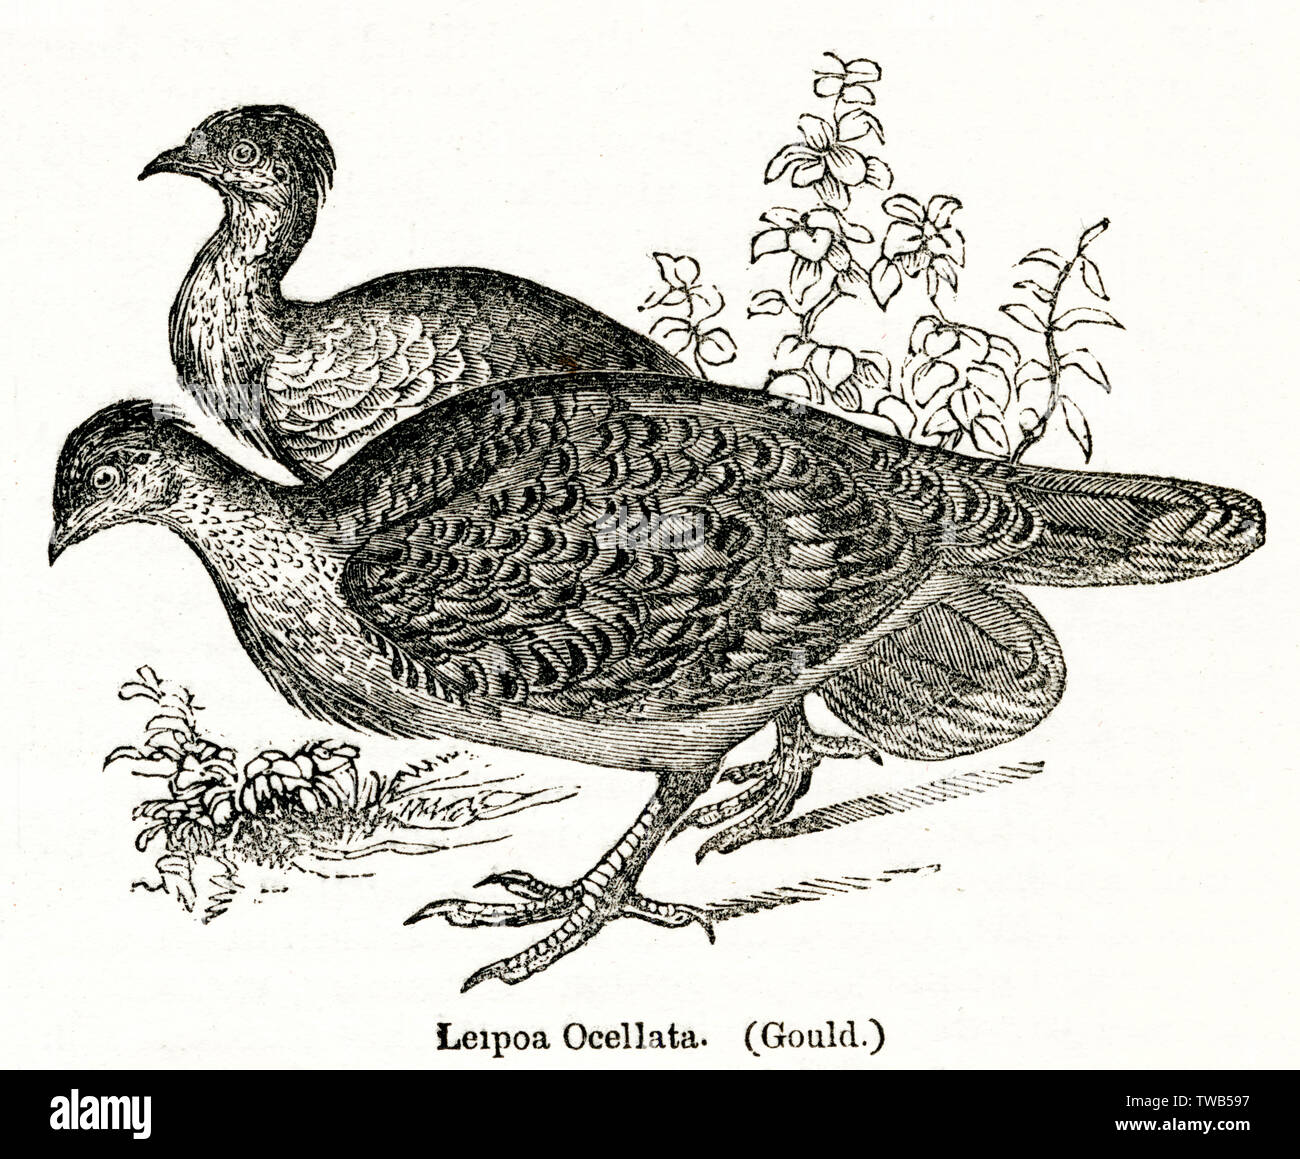 Leipoa Ocellata or Malleefowl, Australian ground-dwelling bird of the ...